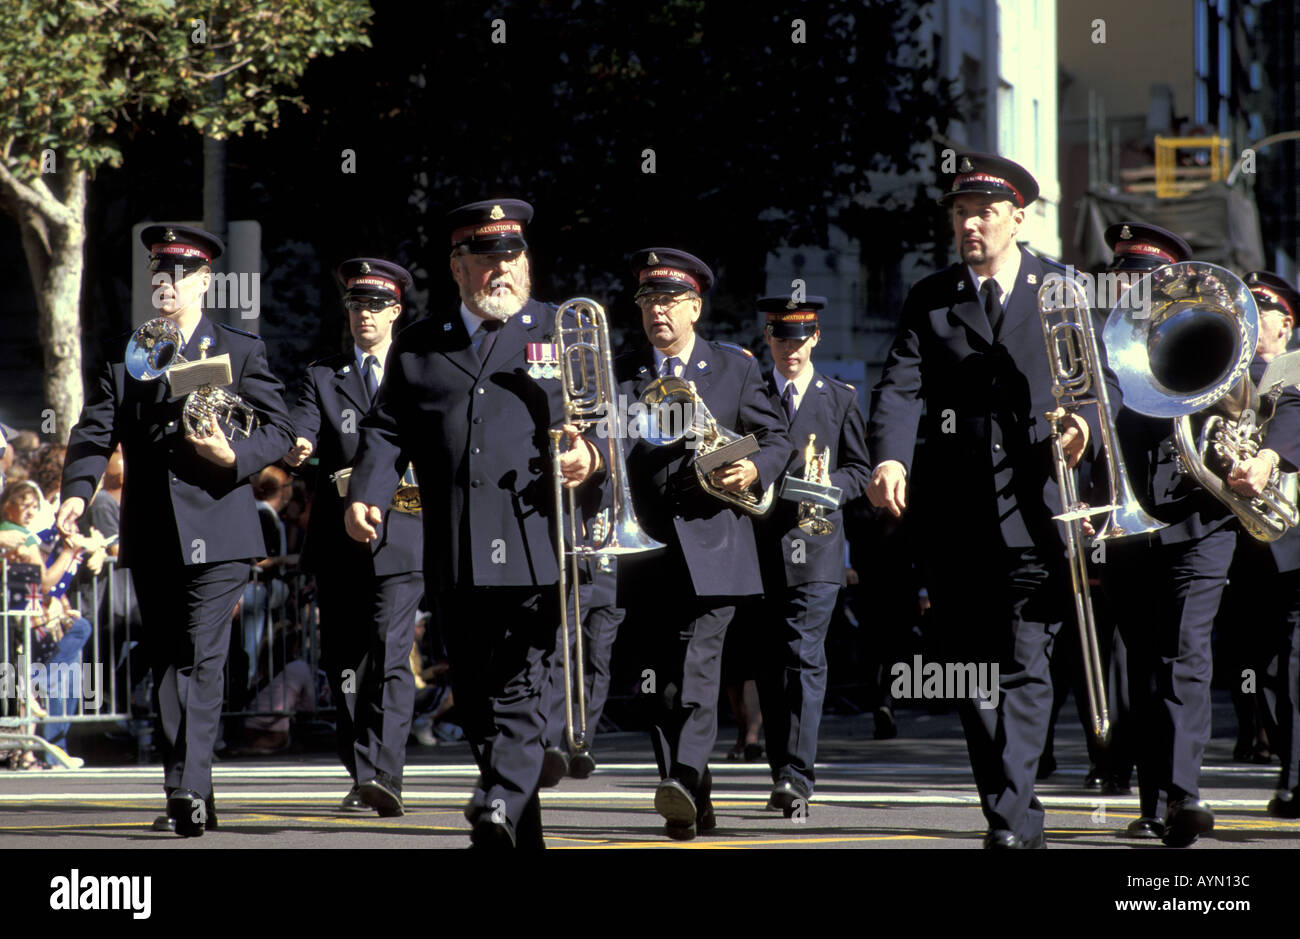 25 avril 2004 Anzac Day Parade Sydney NSW Australie Marching Band de l'Armée du salut et de jouer à travers les rues de Sydney Banque D'Images